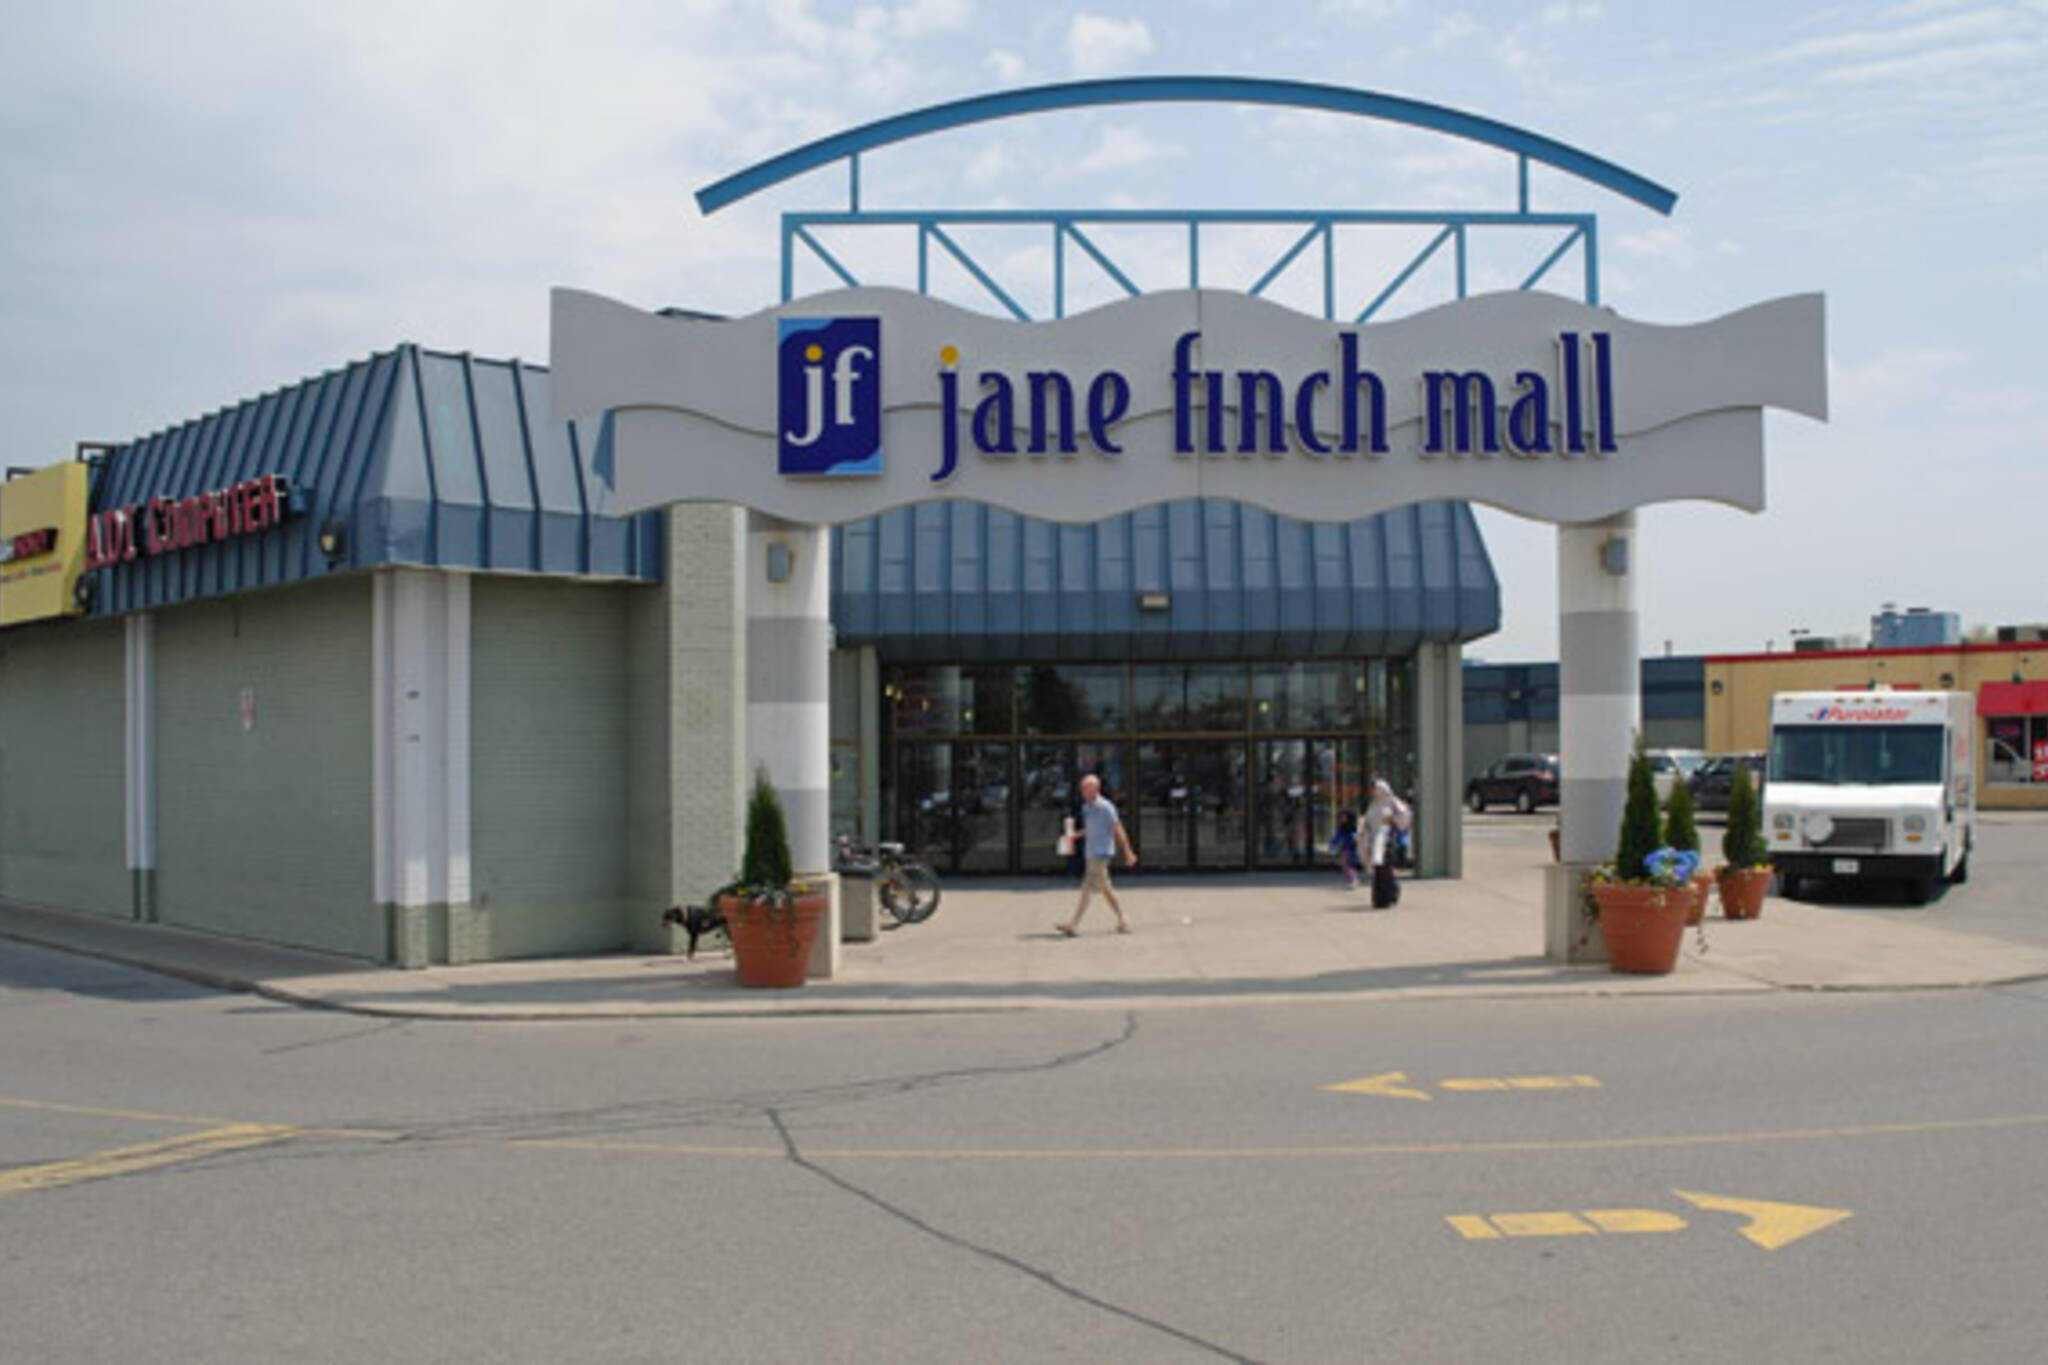 Jane Finch Mall